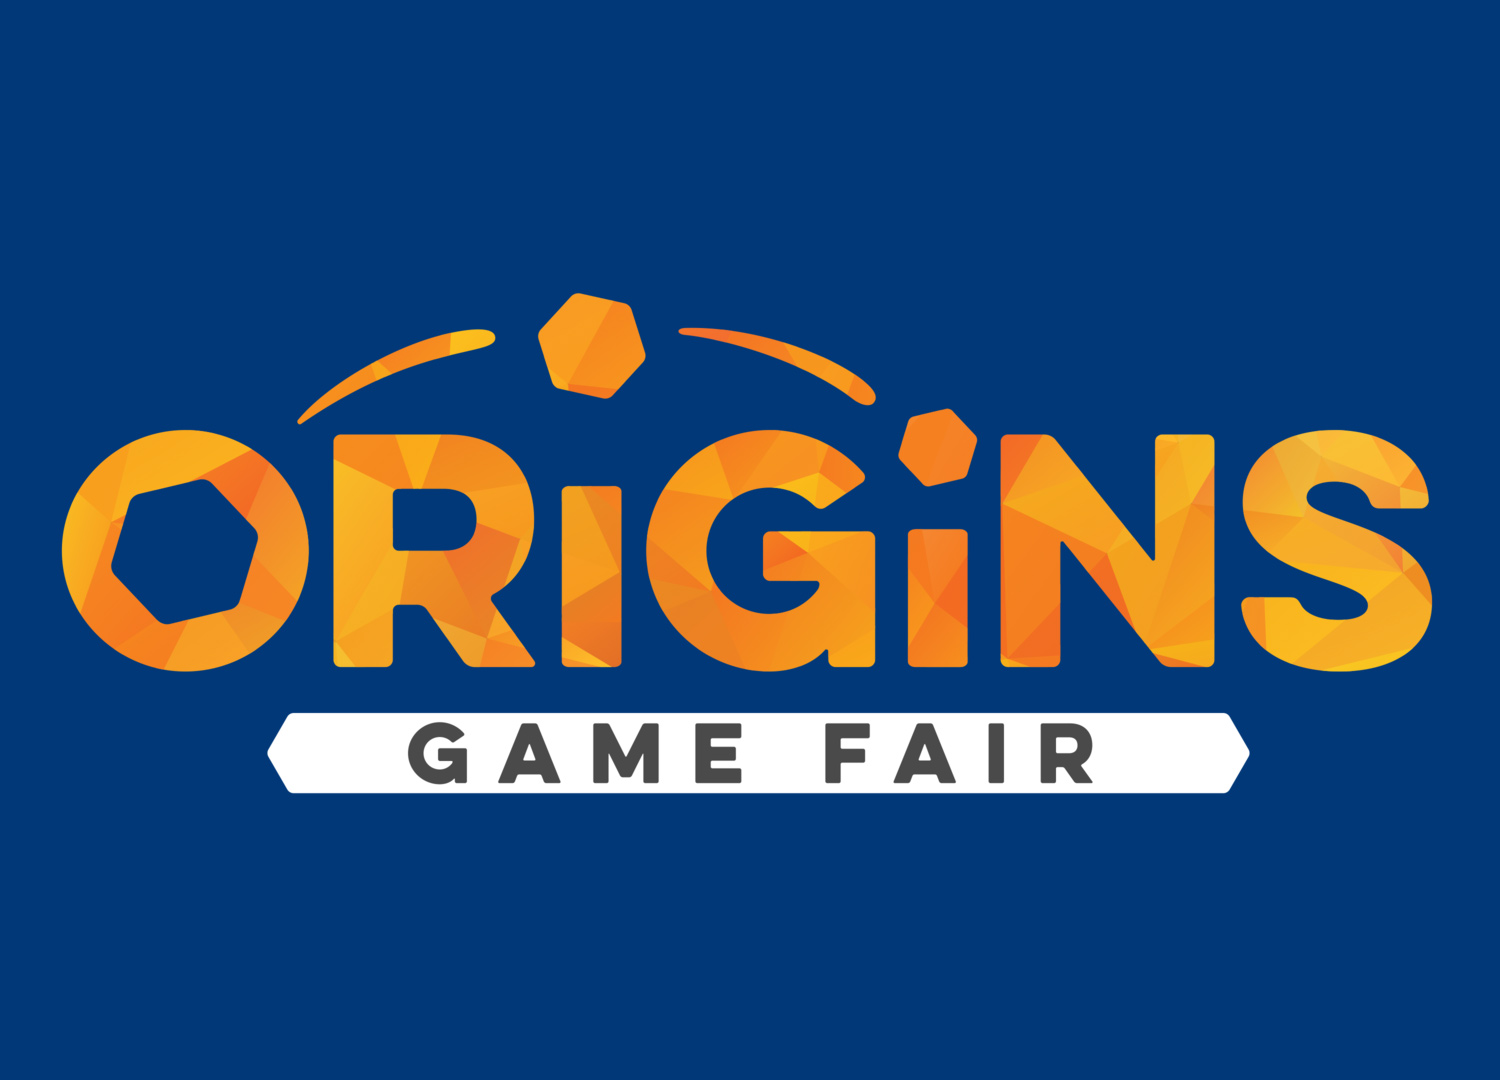 Origins Game Fair 2022 — Board game convention